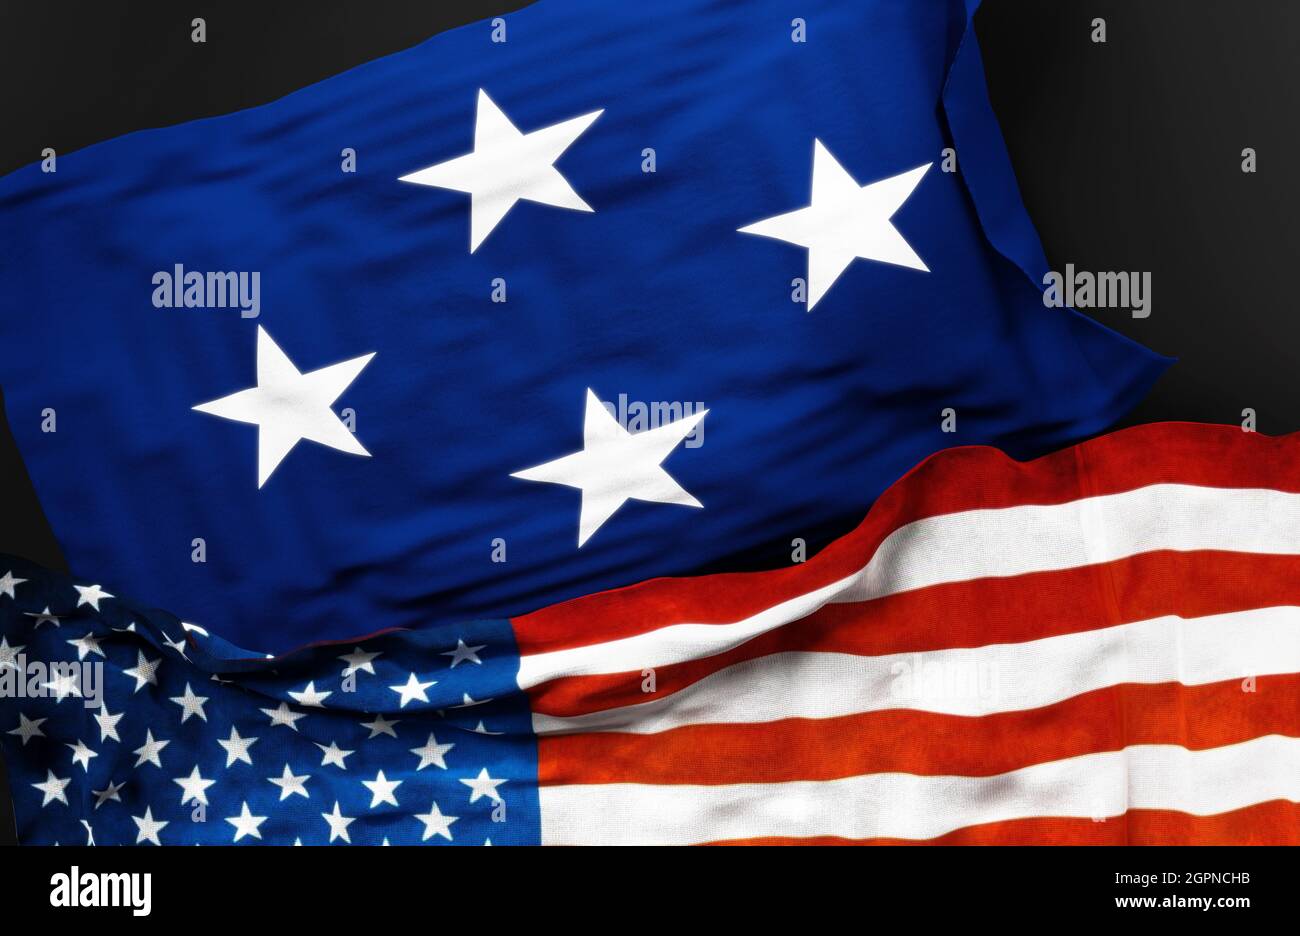 Drapeau d'un amiral de la marine des États-Unis avec un drapeau des États-Unis d'Amérique comme symbole d'unité entre eux, illustration 3d Banque D'Images